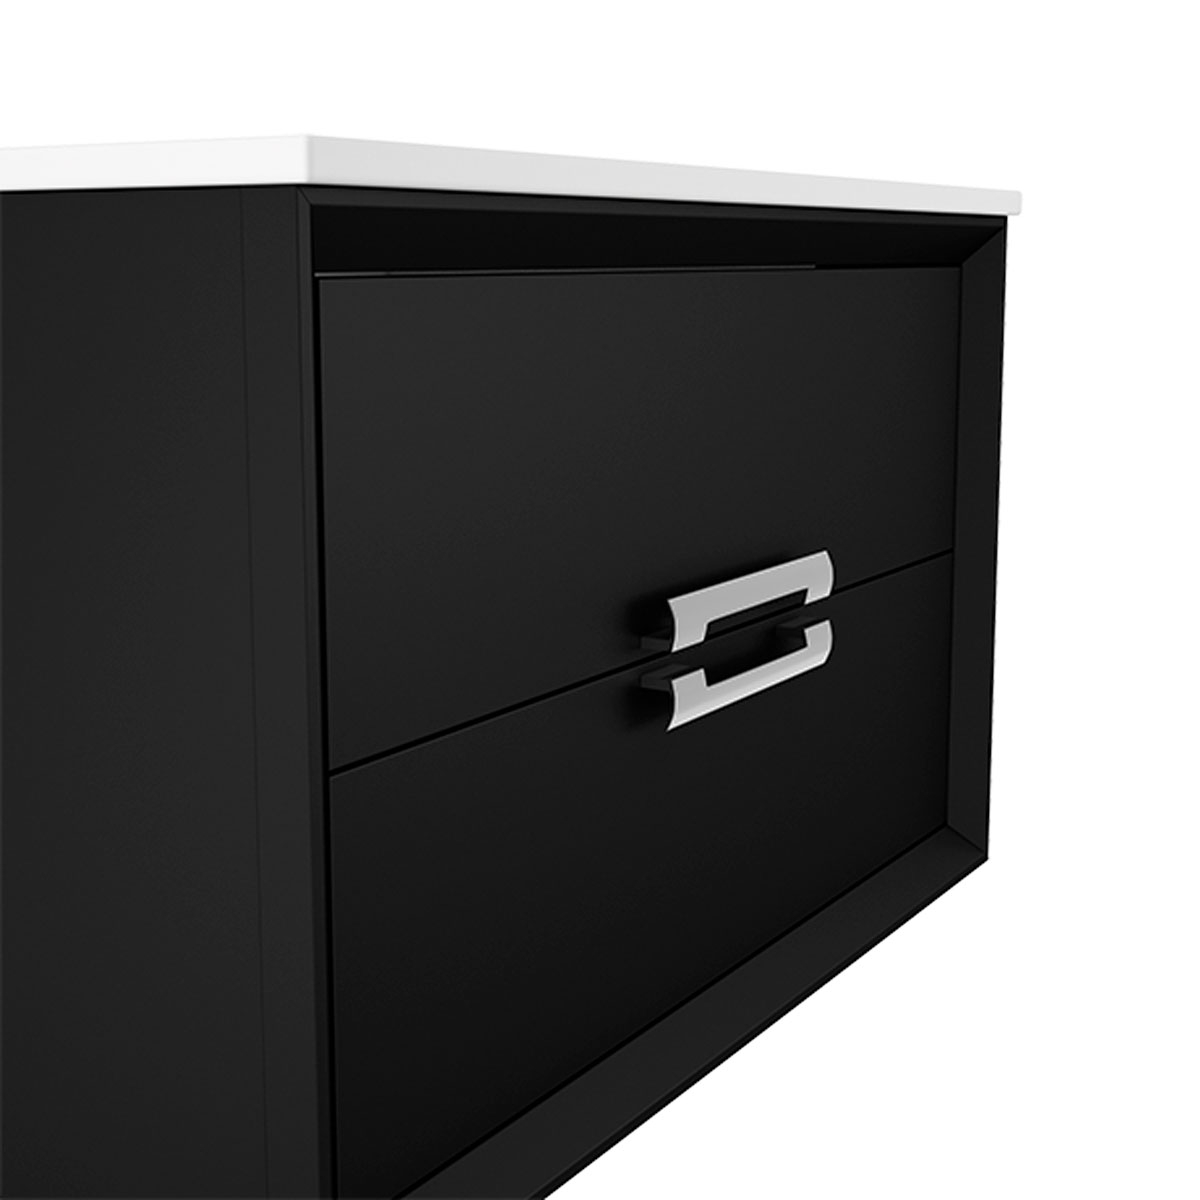 Mueble de baño modelo decor acabado black3